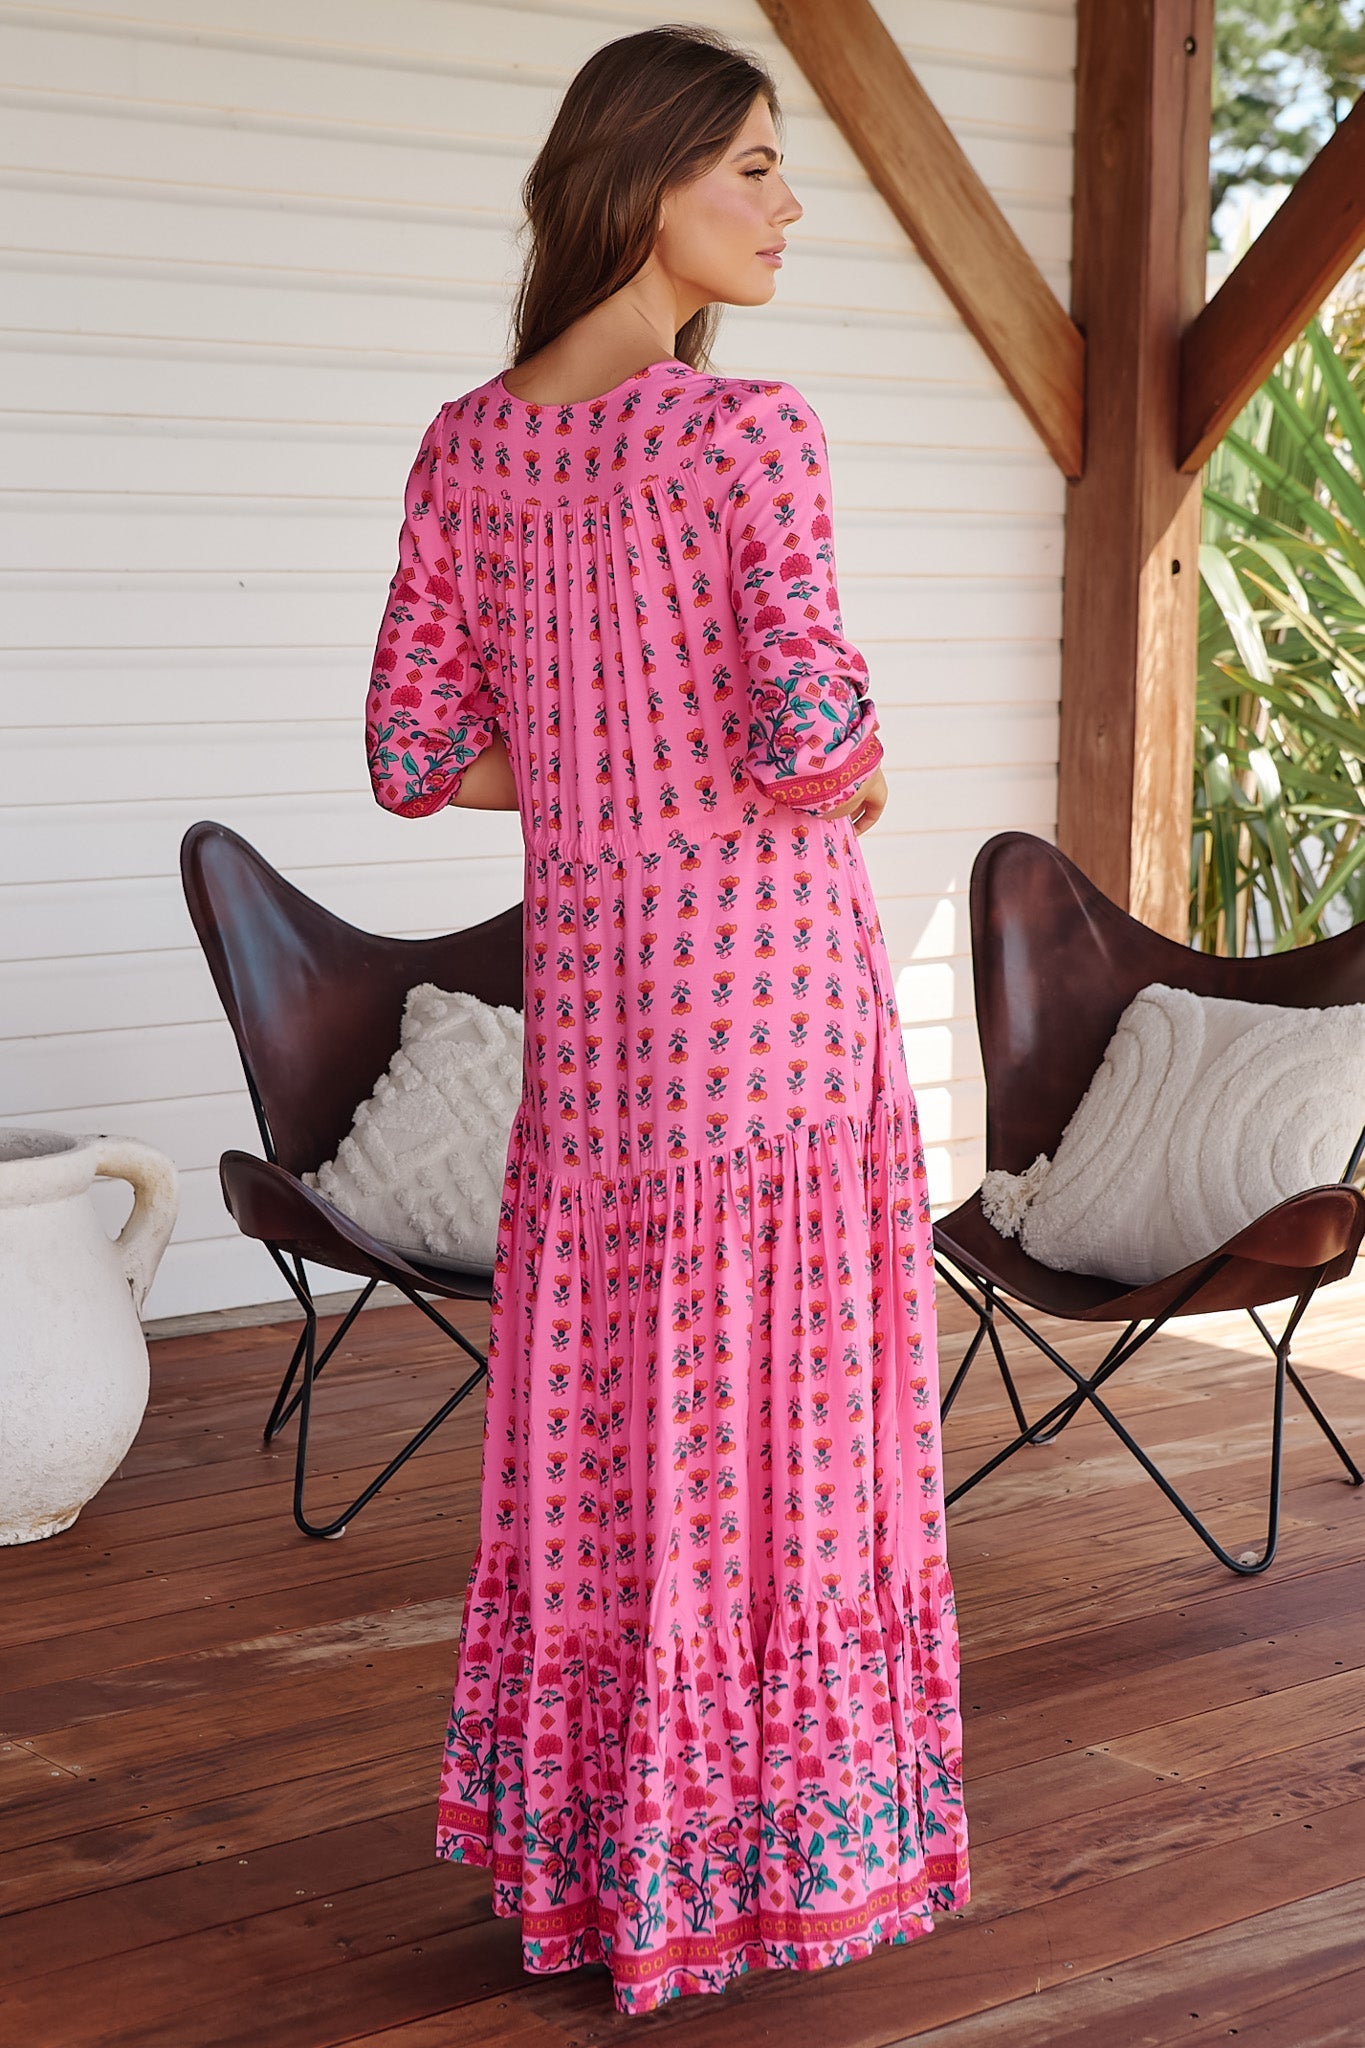 JAASE - Tessa Maxi Dress: A Line Pull Tie Waist Dress in Raspberry Romance Print